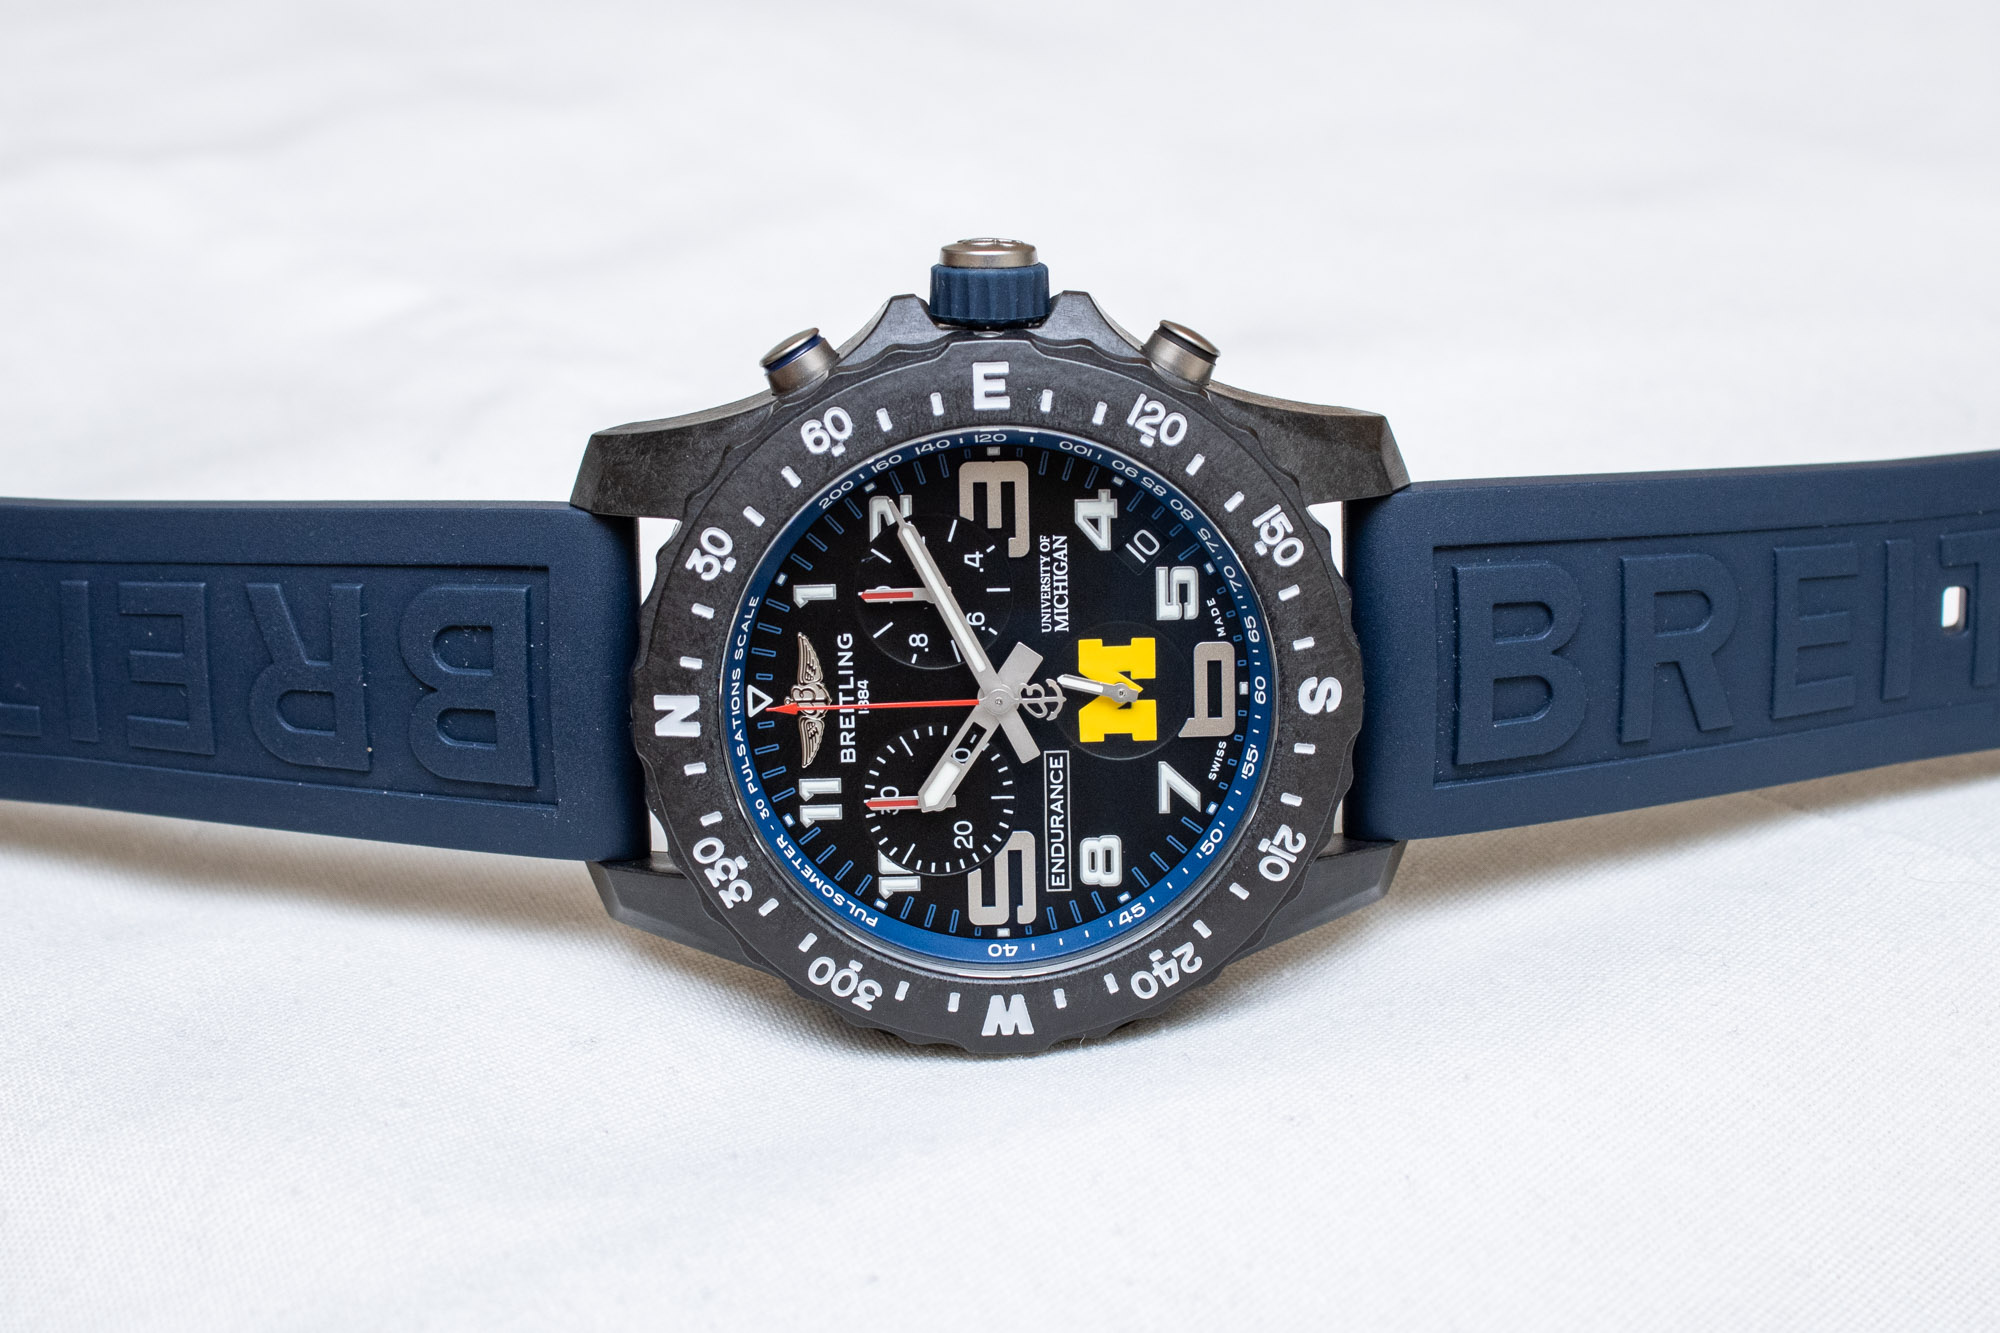 Яркий обзор наручных часов Breitling Endurance Pro University Edition